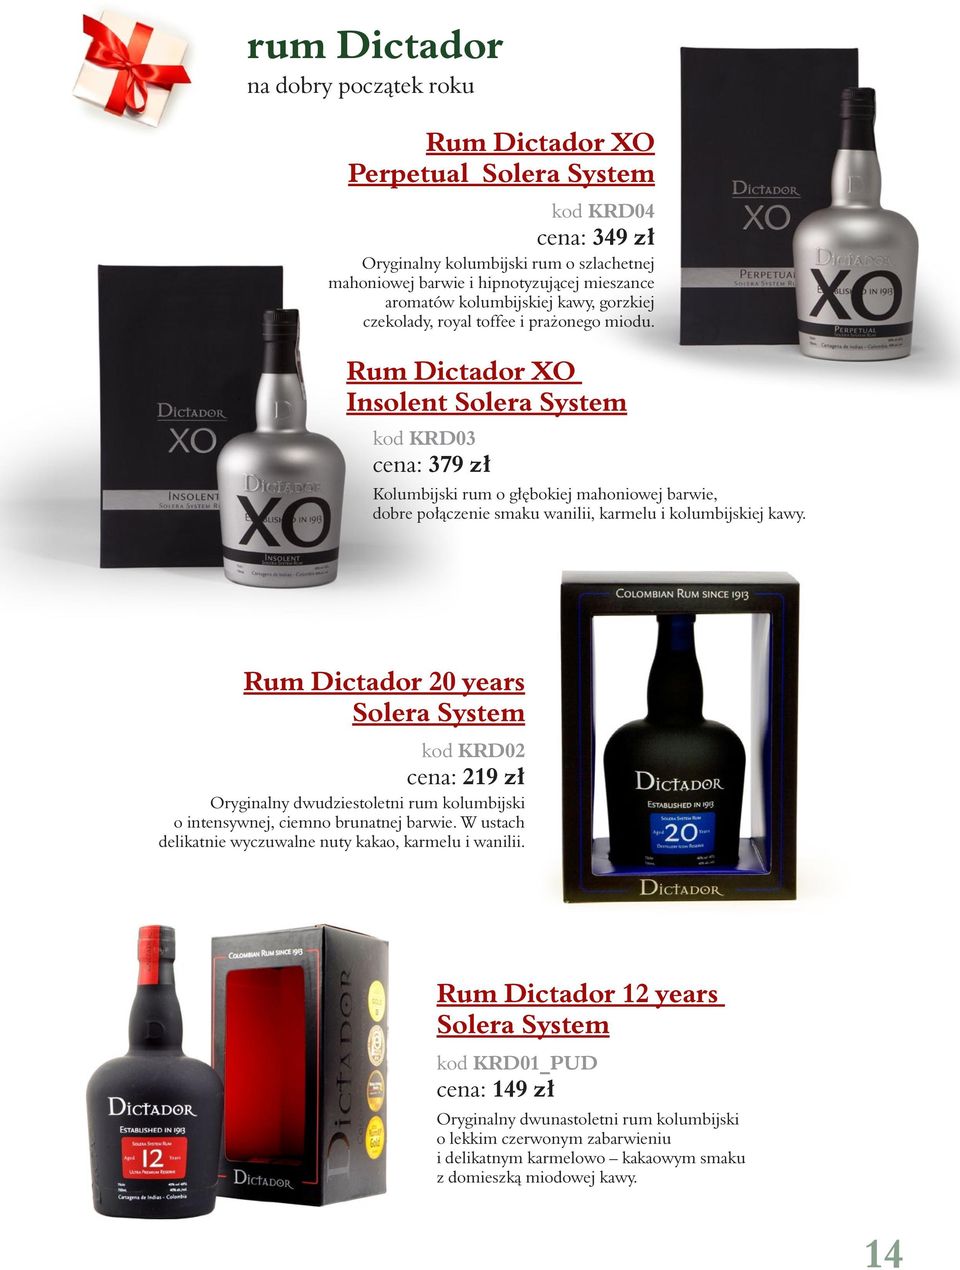 Rum Dictador XO Insolent Solera System kod KRD03 cena: 379 zł Kolumbijski rum o głębokiej mahoniowej barwie, dobre połączenie smaku wanilii, karmelu i kolumbijskiej kawy.